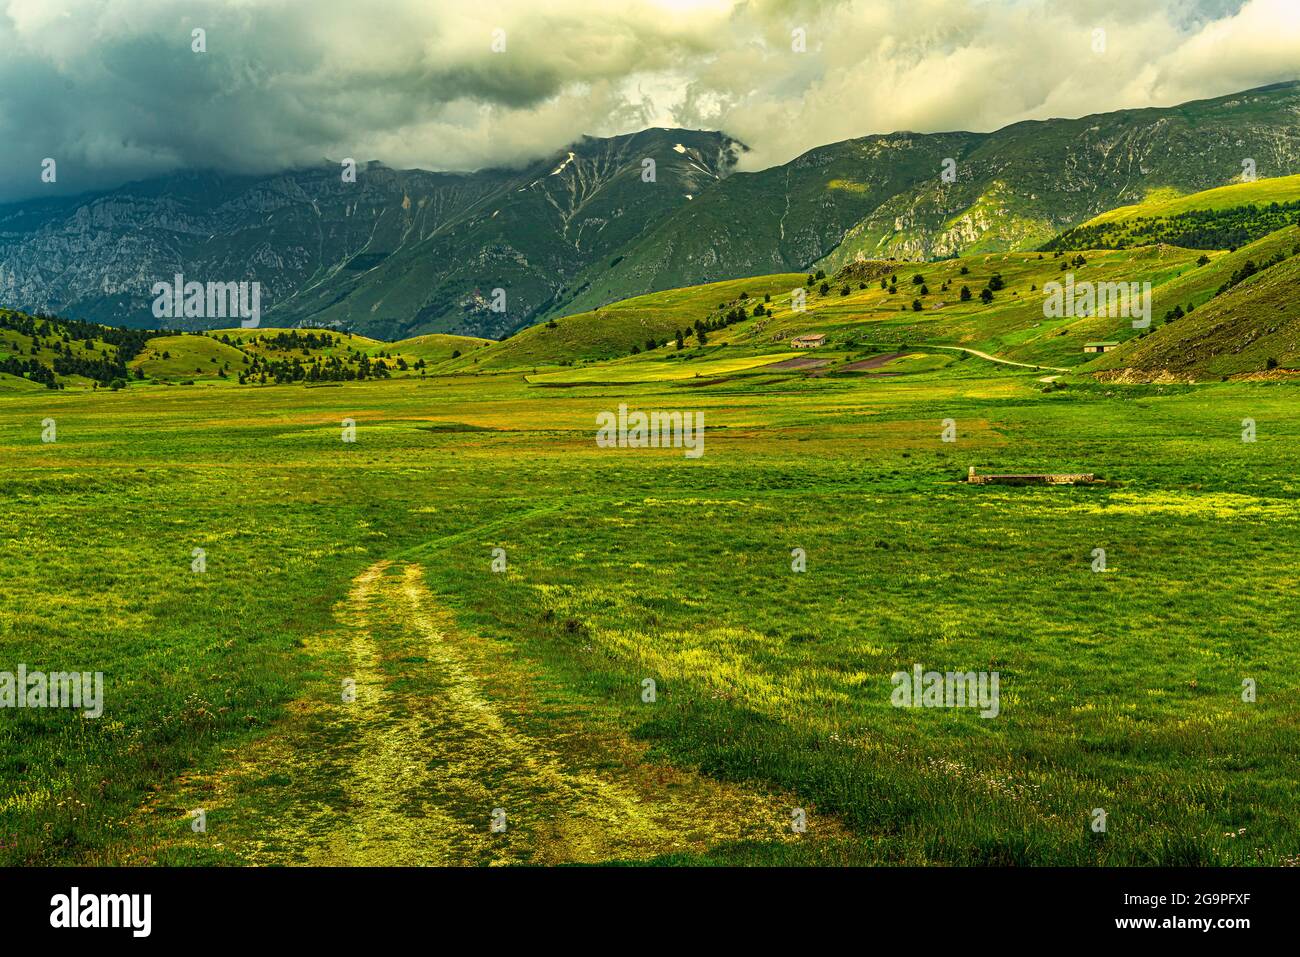 Sentiero che attraversa i campi e le colline del piano di Fugno. Parco Nazionale del Gran Sasso e Monti della Laga, Filletto, Abruzzo, Italia, Europa Foto Stock